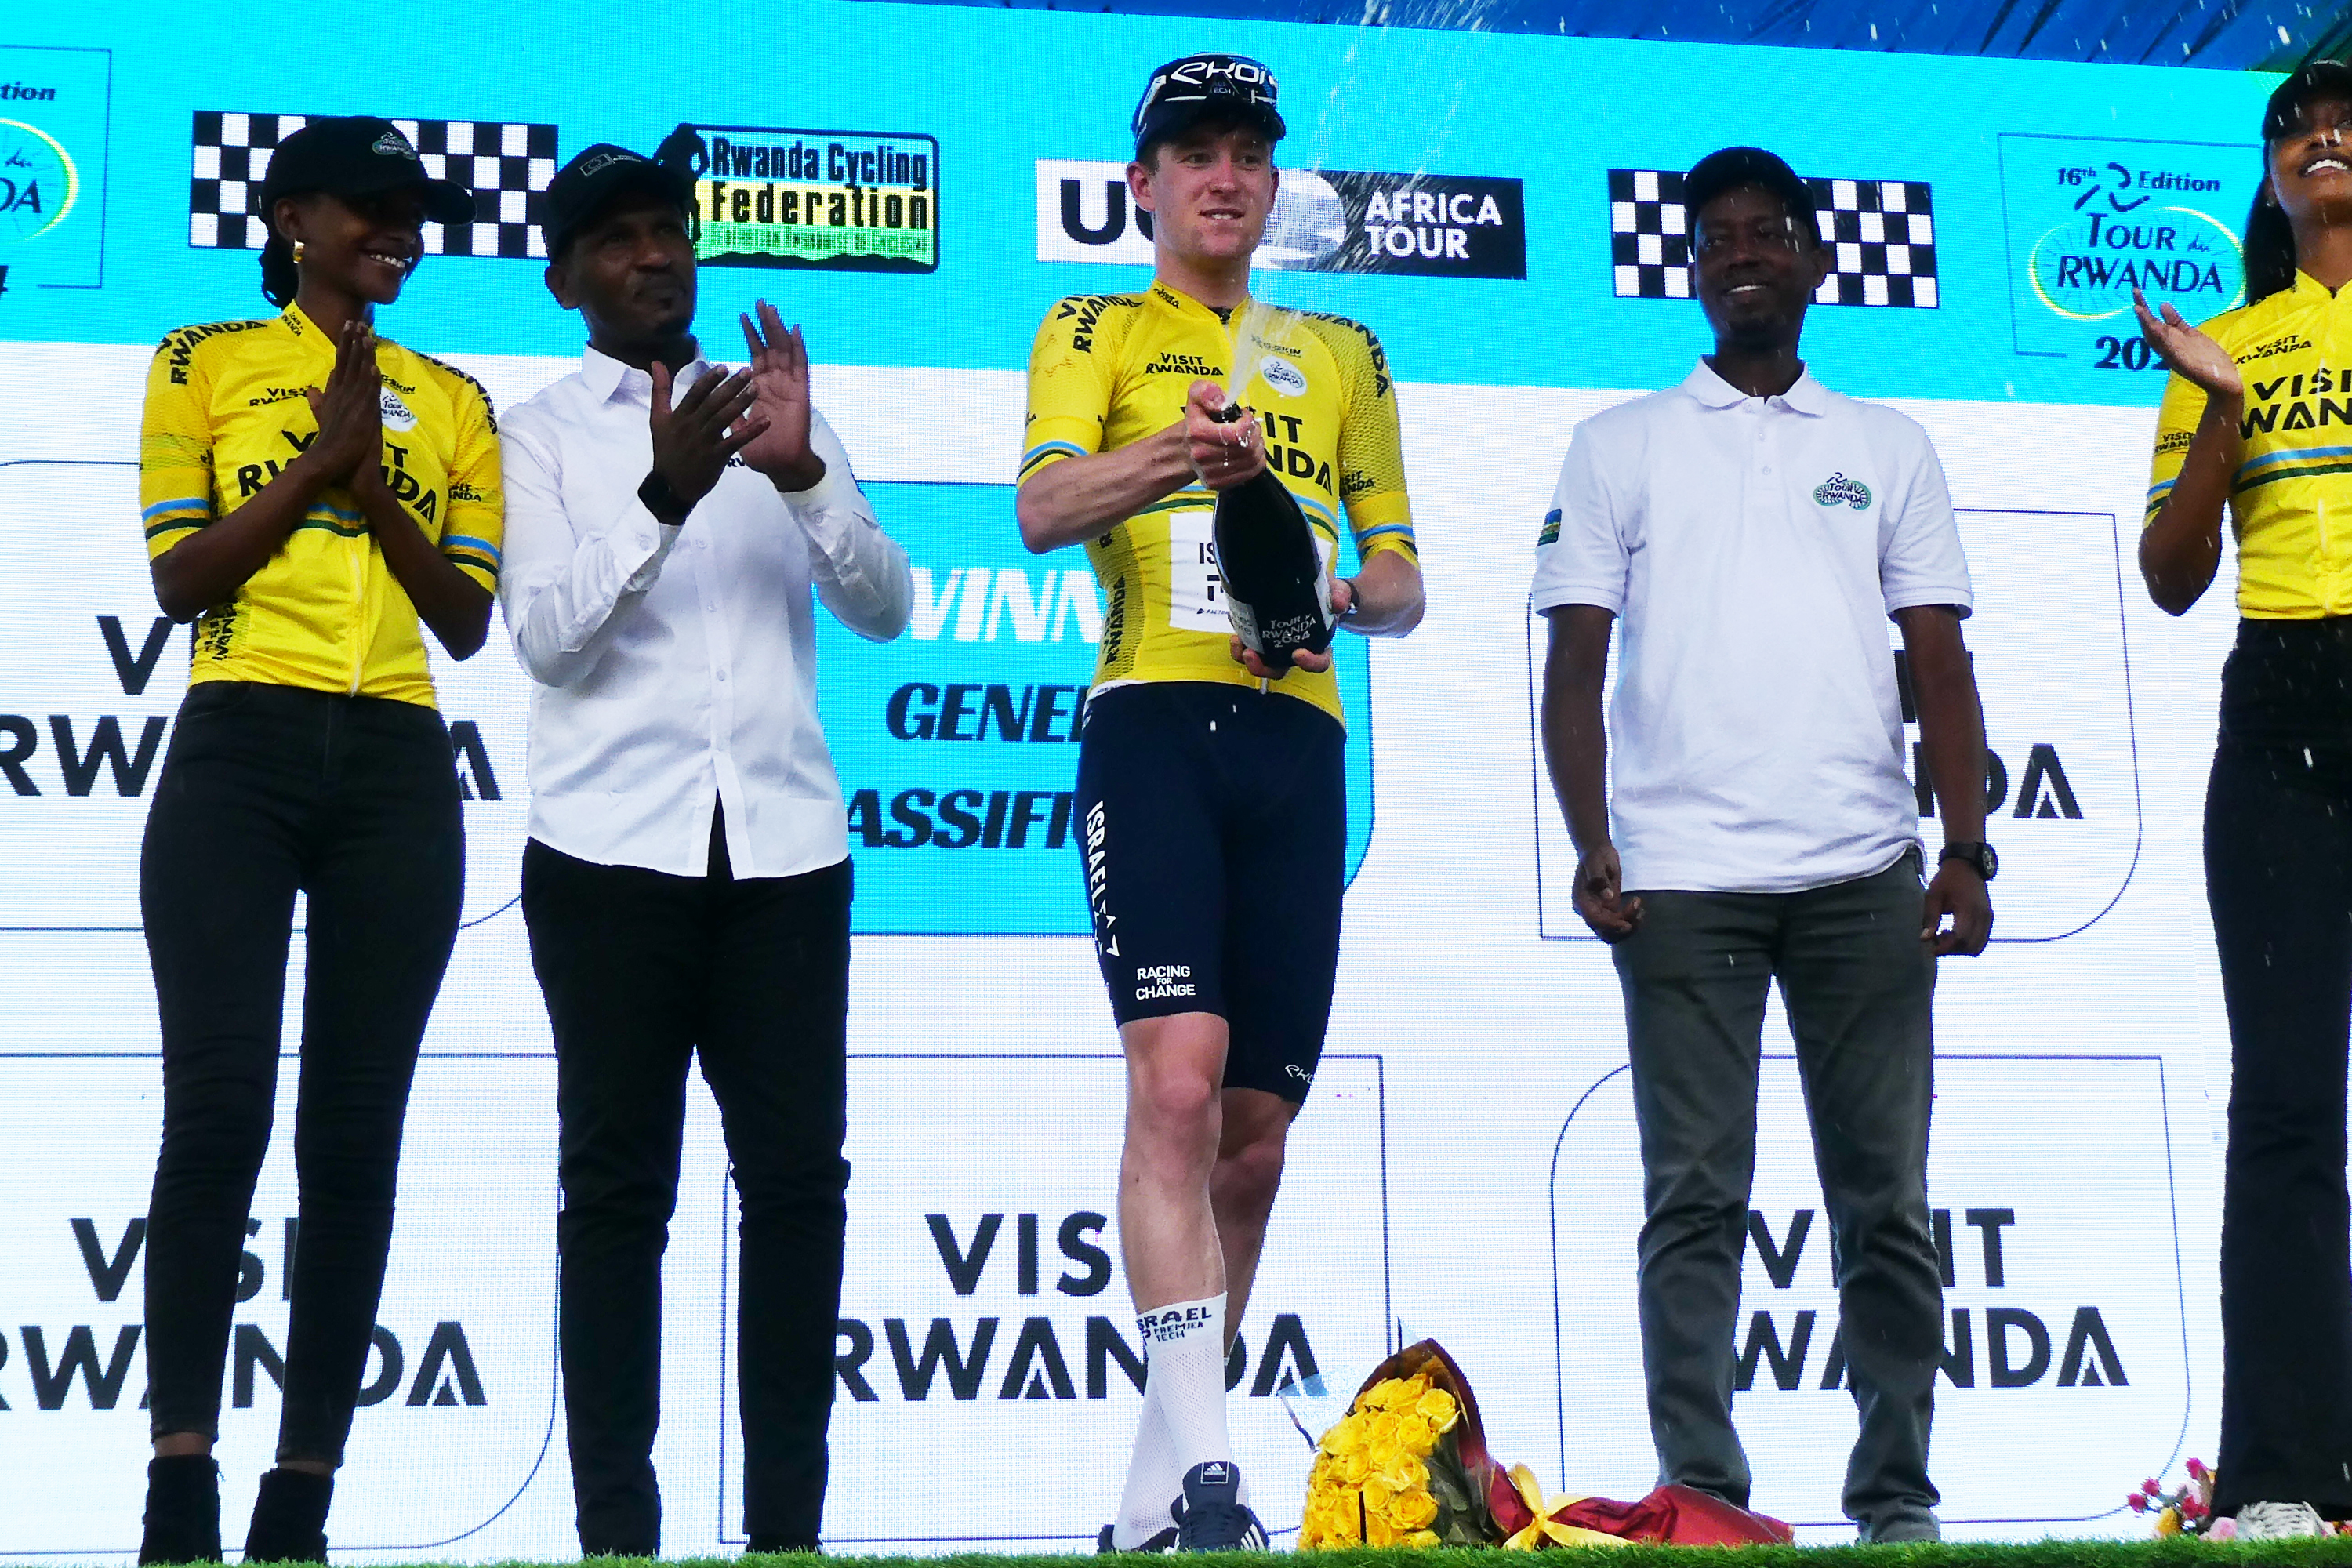 Joe Blackmore mengenakan seragam kuning Tour du Rwanda